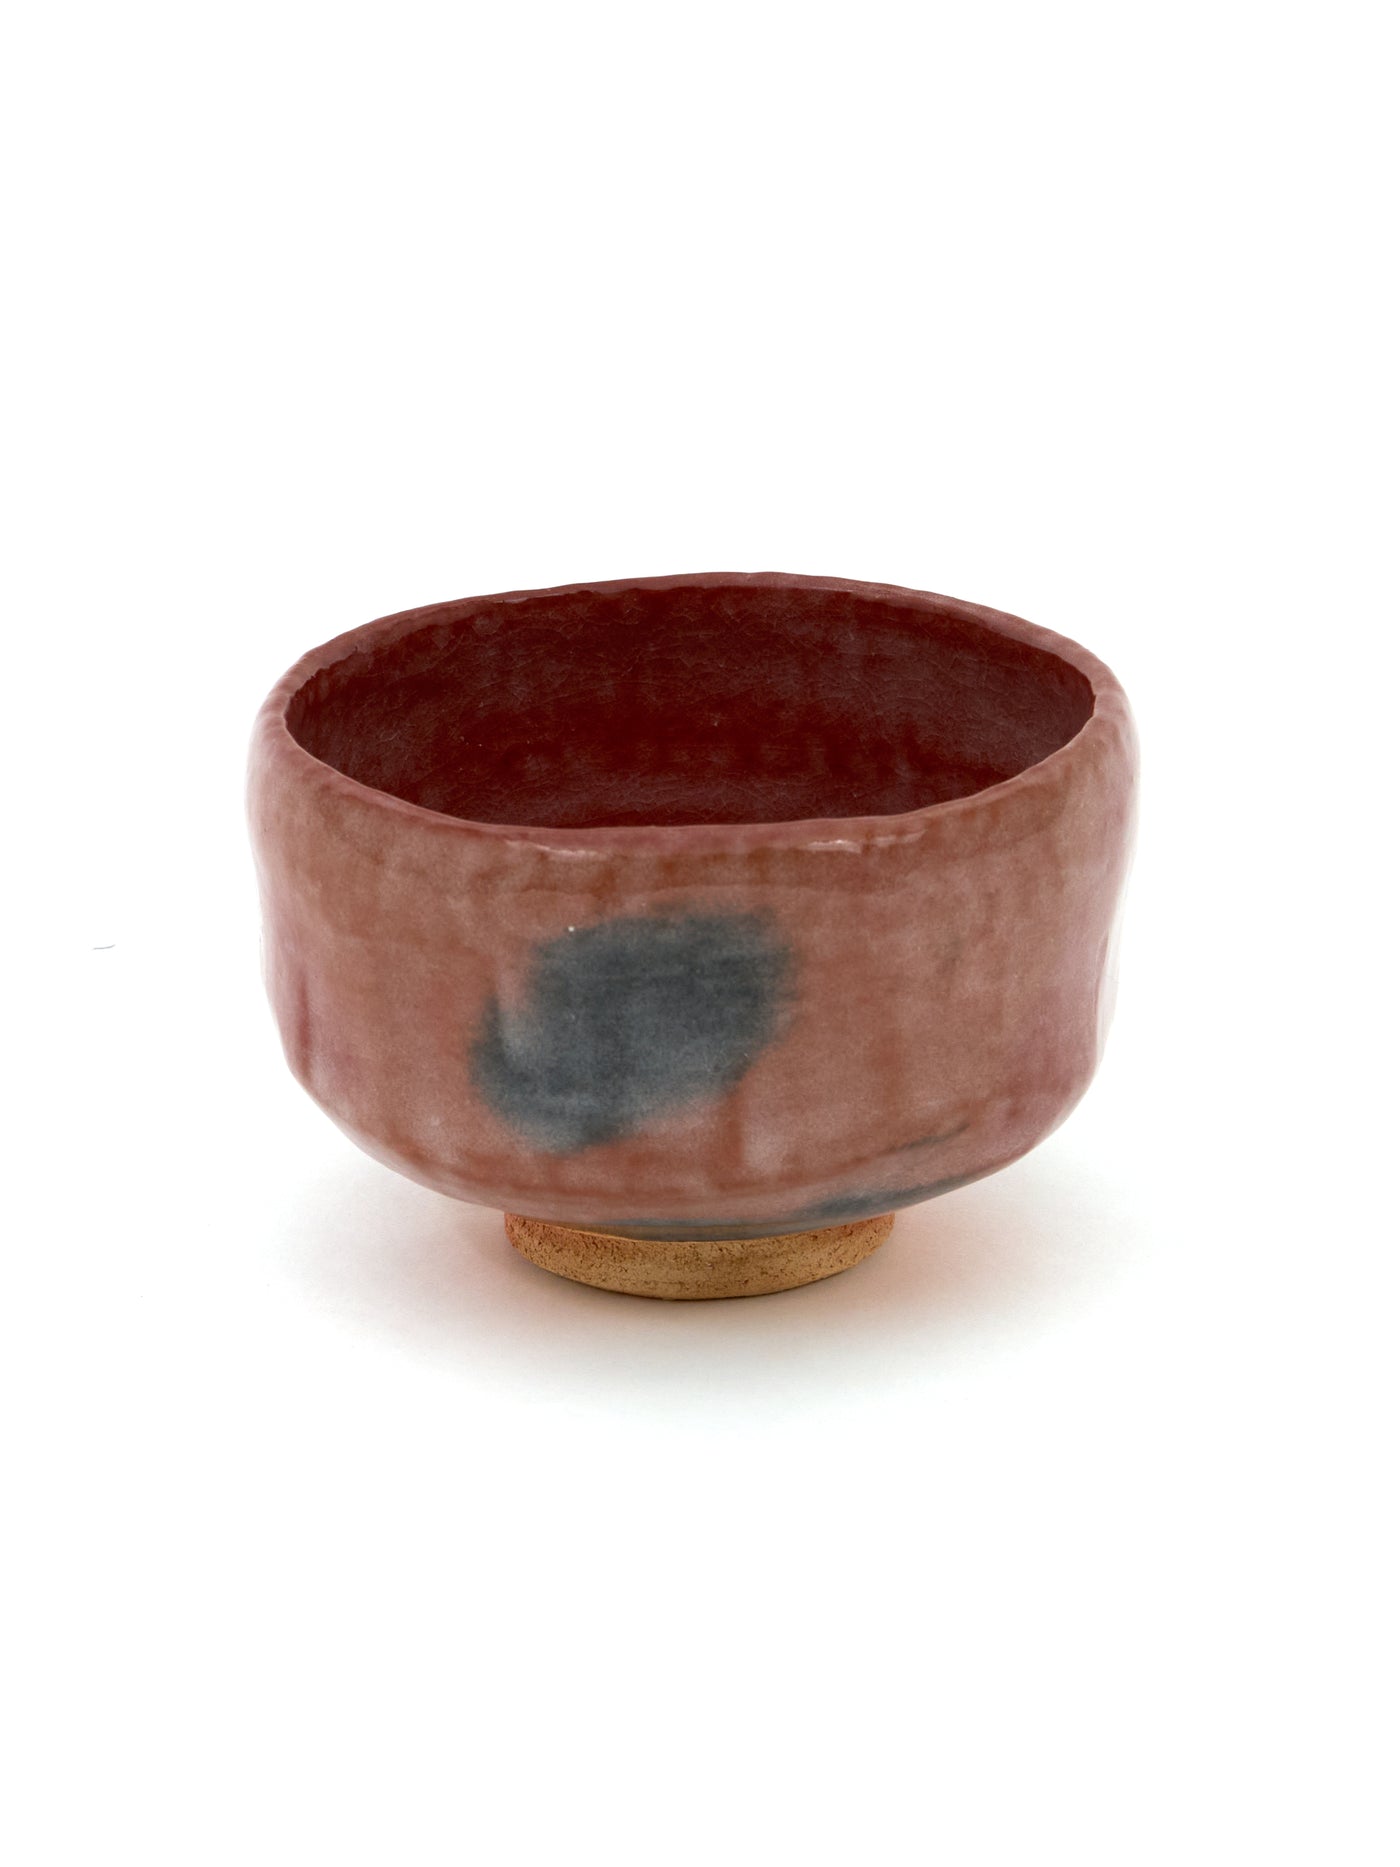 Red Raku Pottery Chawan Matcha Bowl by Shuraku